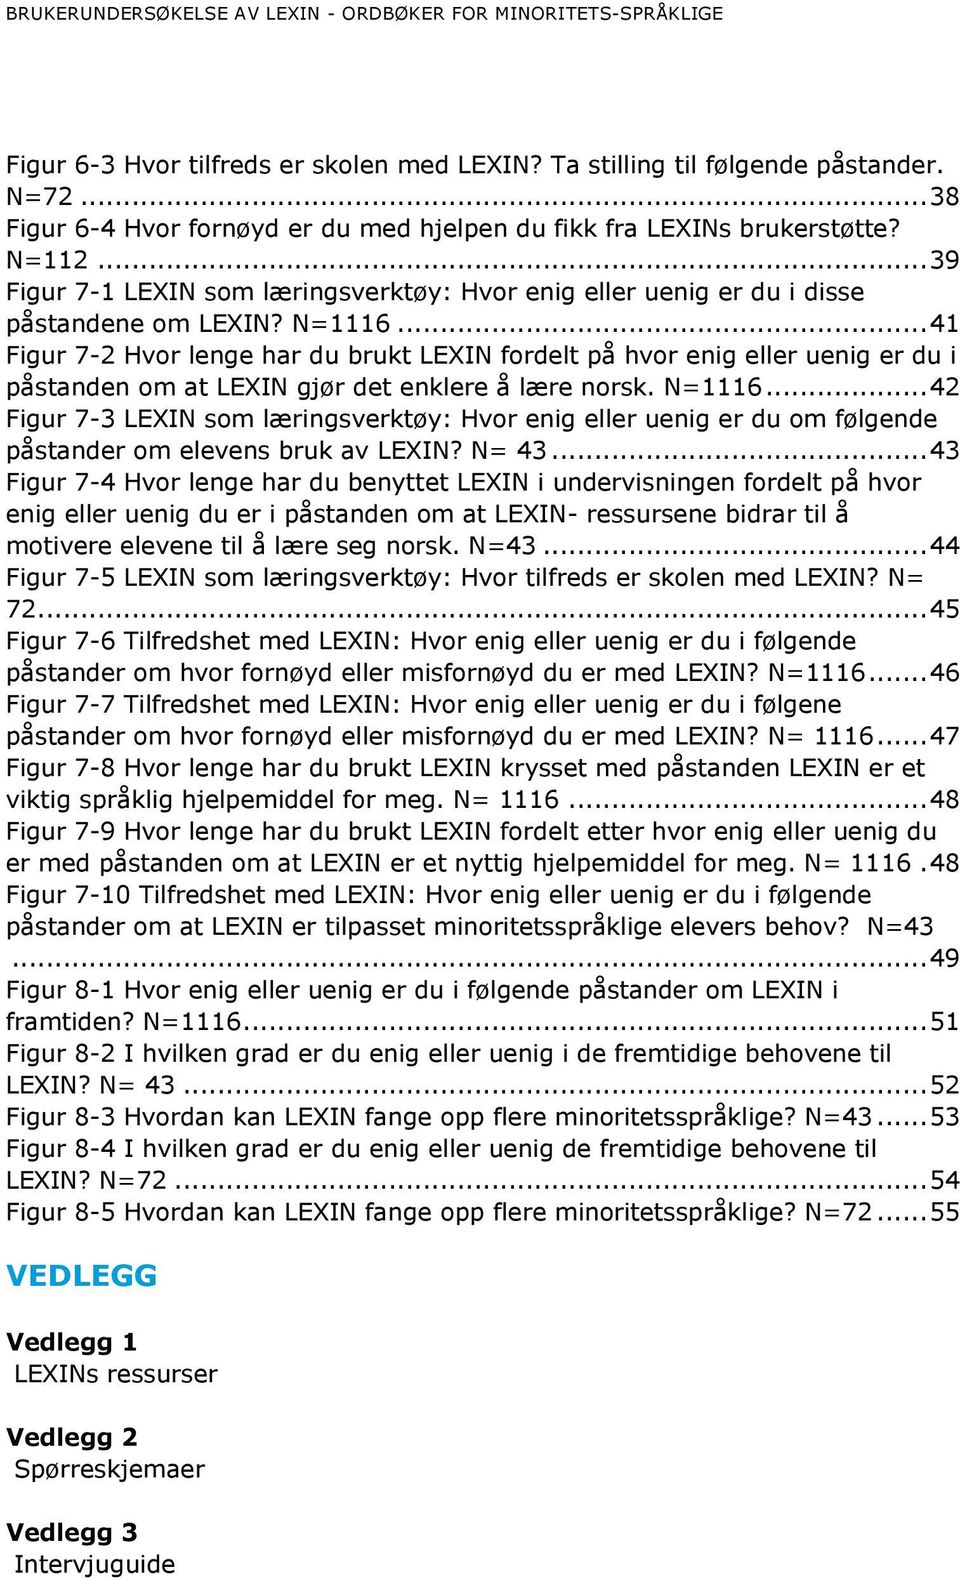 .. 41 Figur 7-2 Hvor lenge har du brukt LEXIN fordelt på hvor enig eller uenig er du i påstanden om at LEXIN gjør det enklere å lære norsk. N=1116.